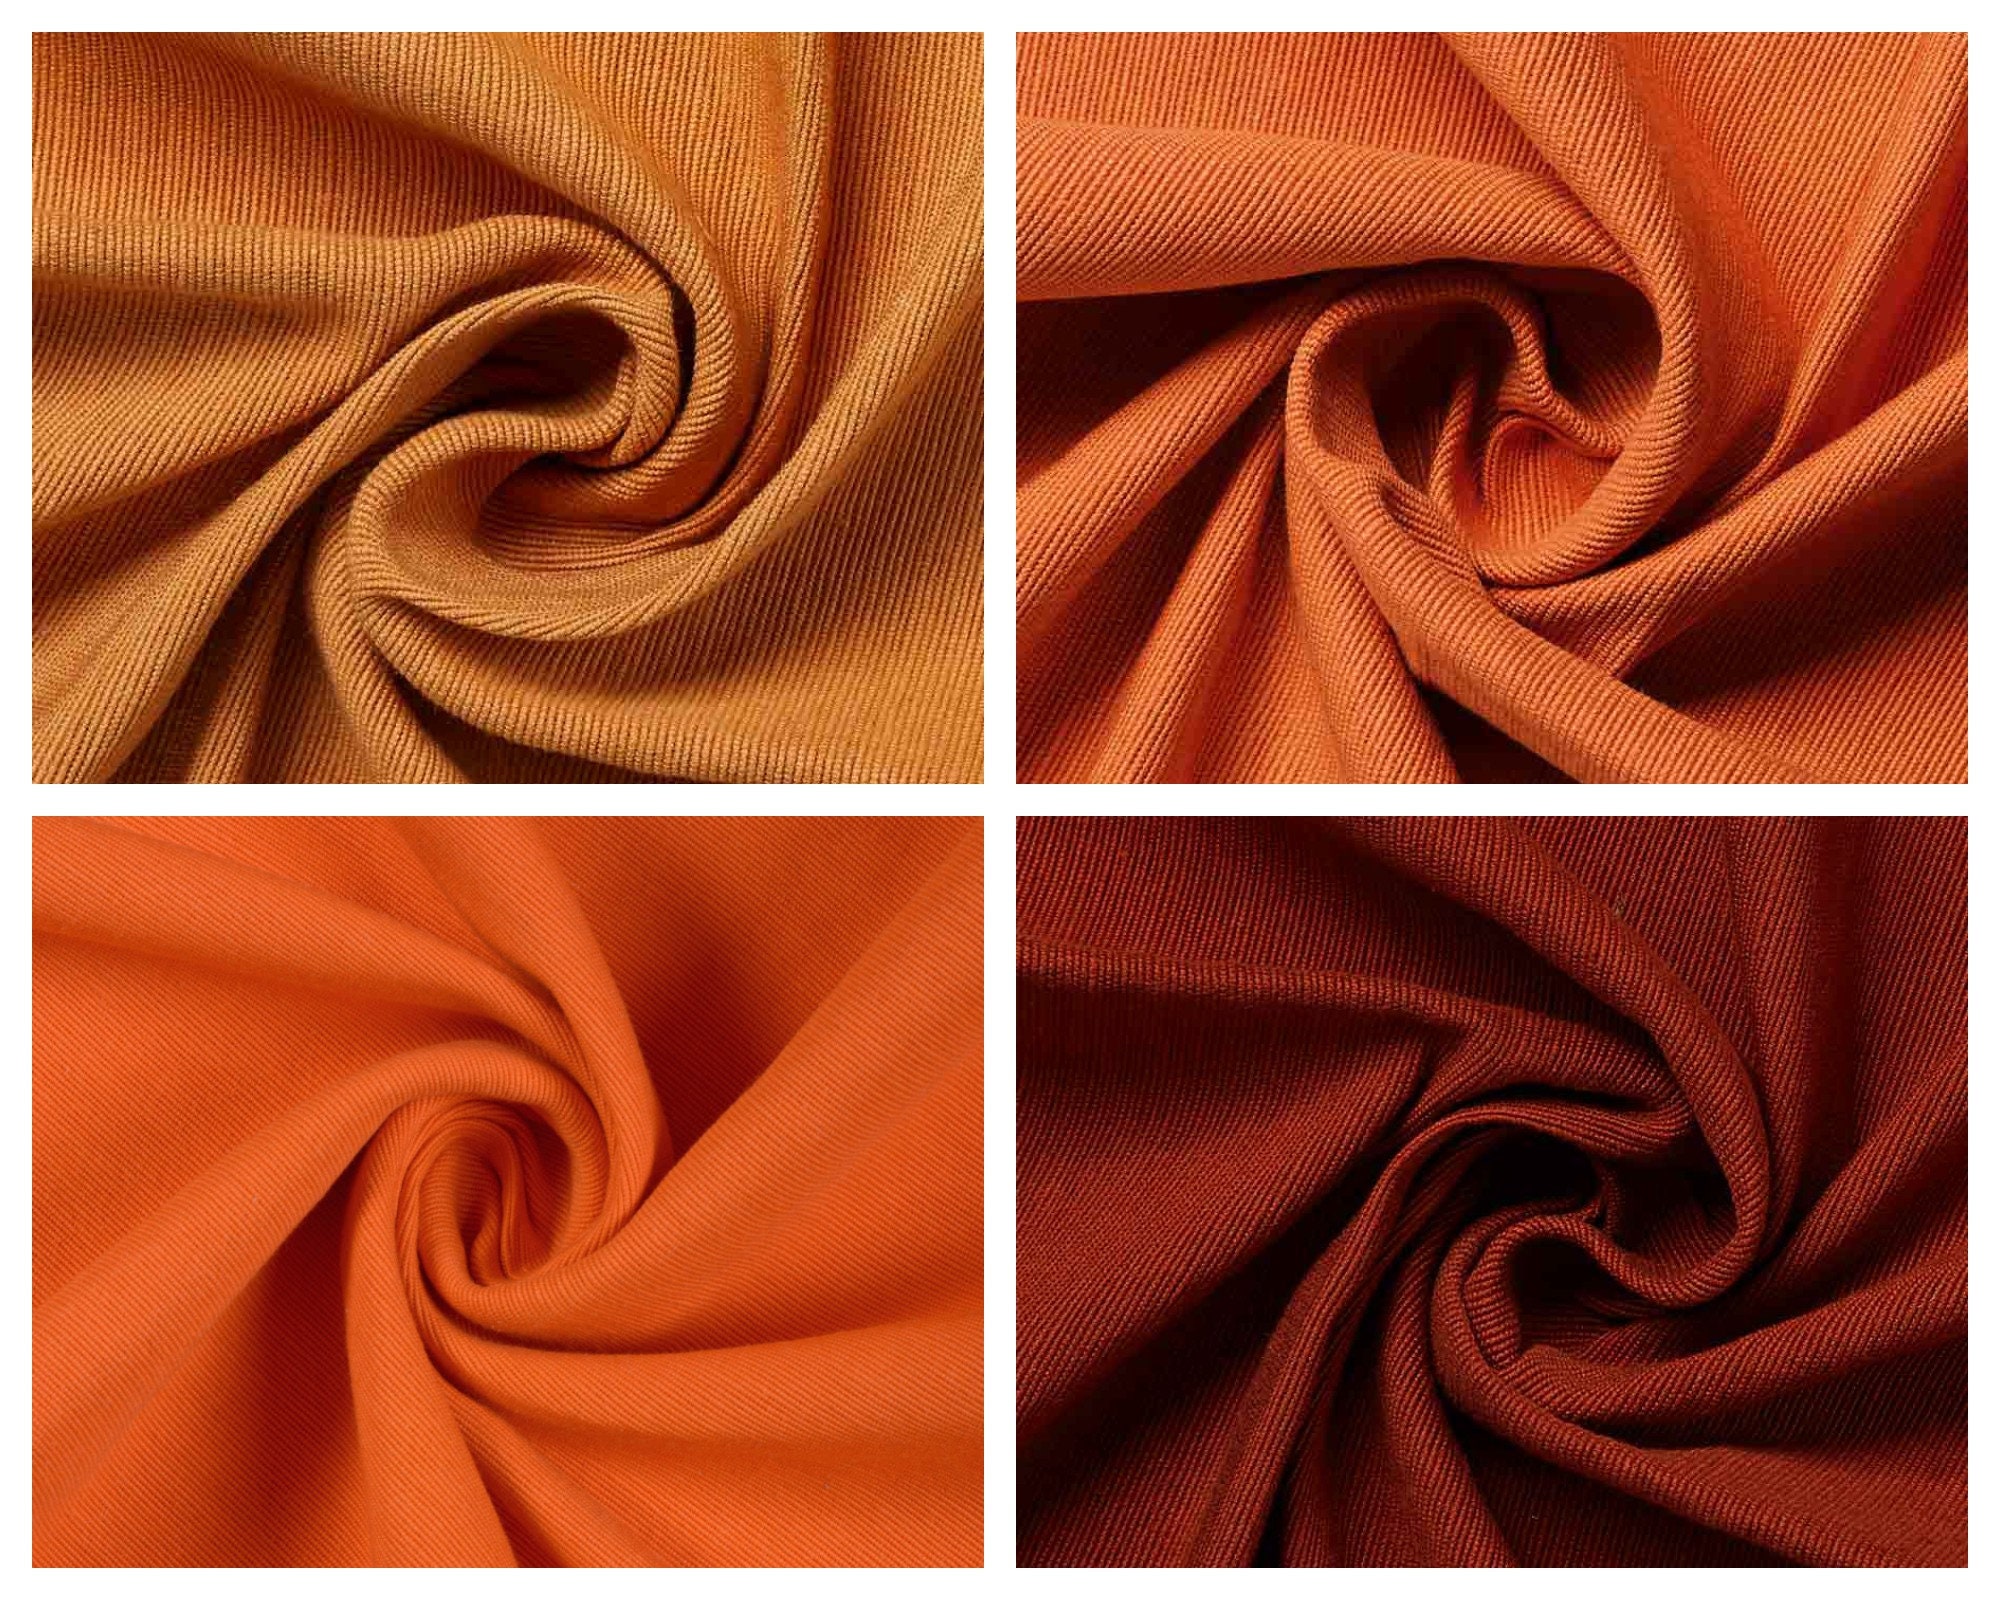 Rust Cotton Leggings, Dark Orange, Burnt Orange, Natural Fiber, Cotton  Clothing -  Canada